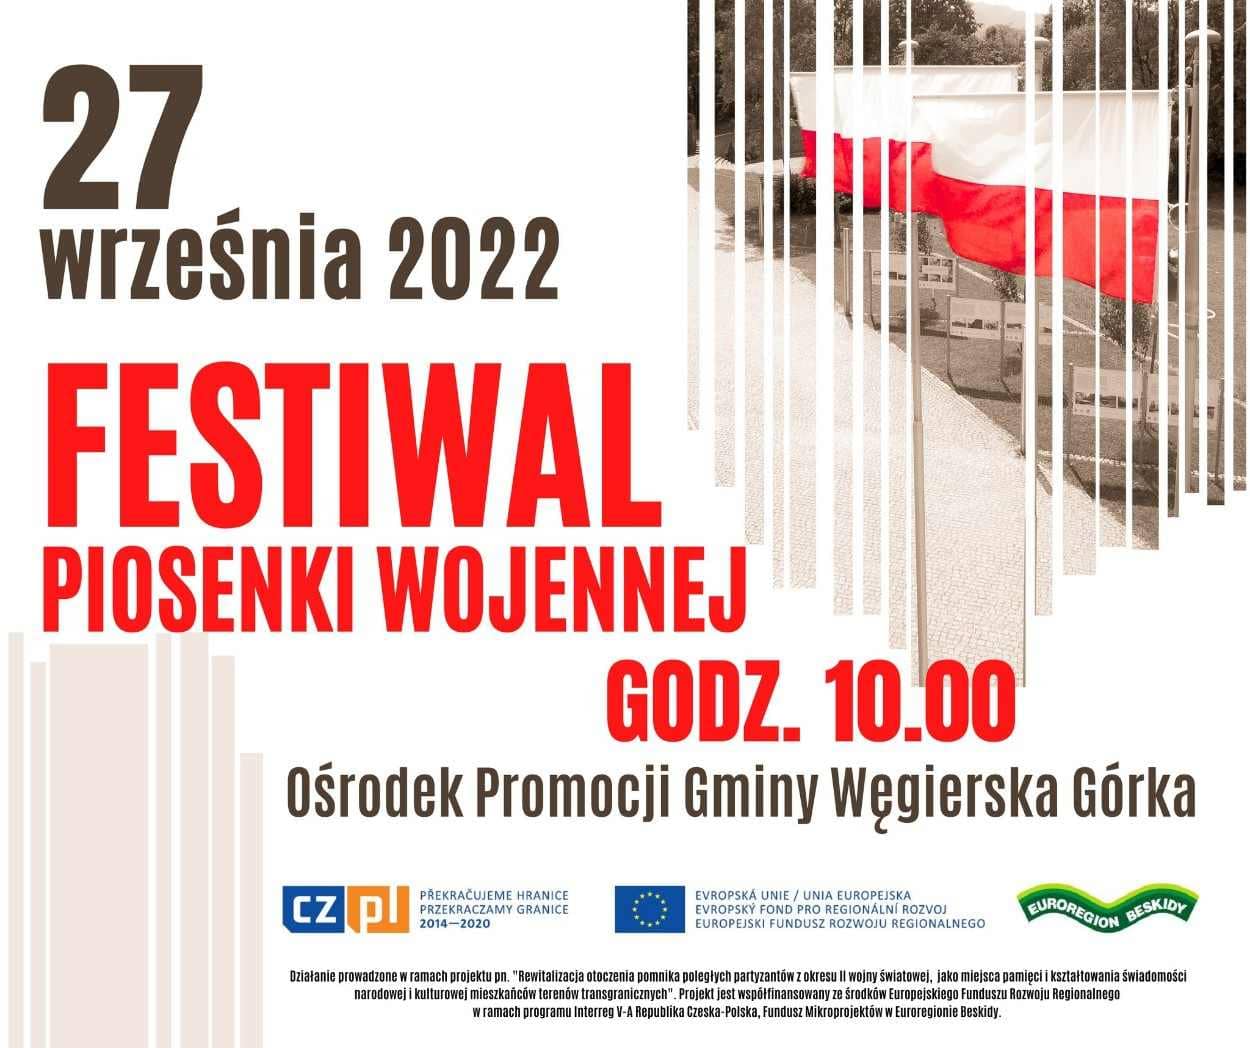 Festiwal Piosenki Wojennej w Węgierskiej Górce